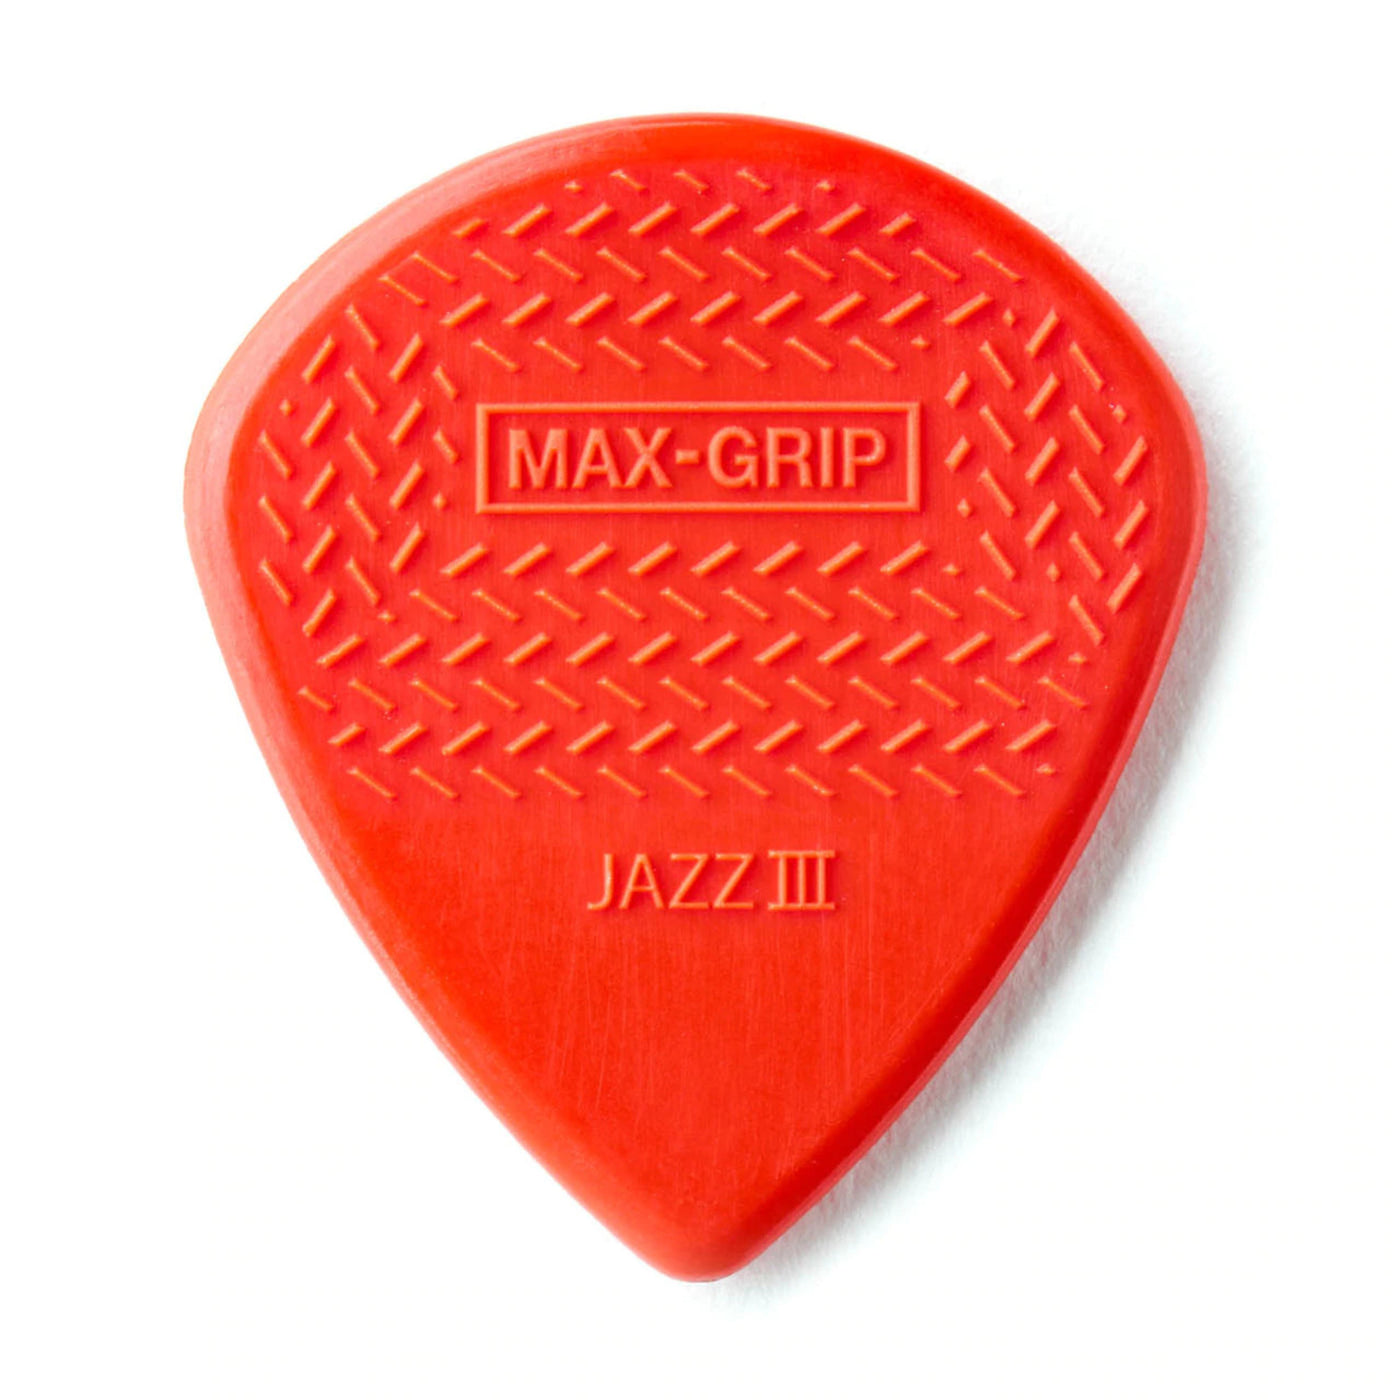 Dunlop 471P3N Max-Grip Jazz lll Nylon Pick- 6 Pack